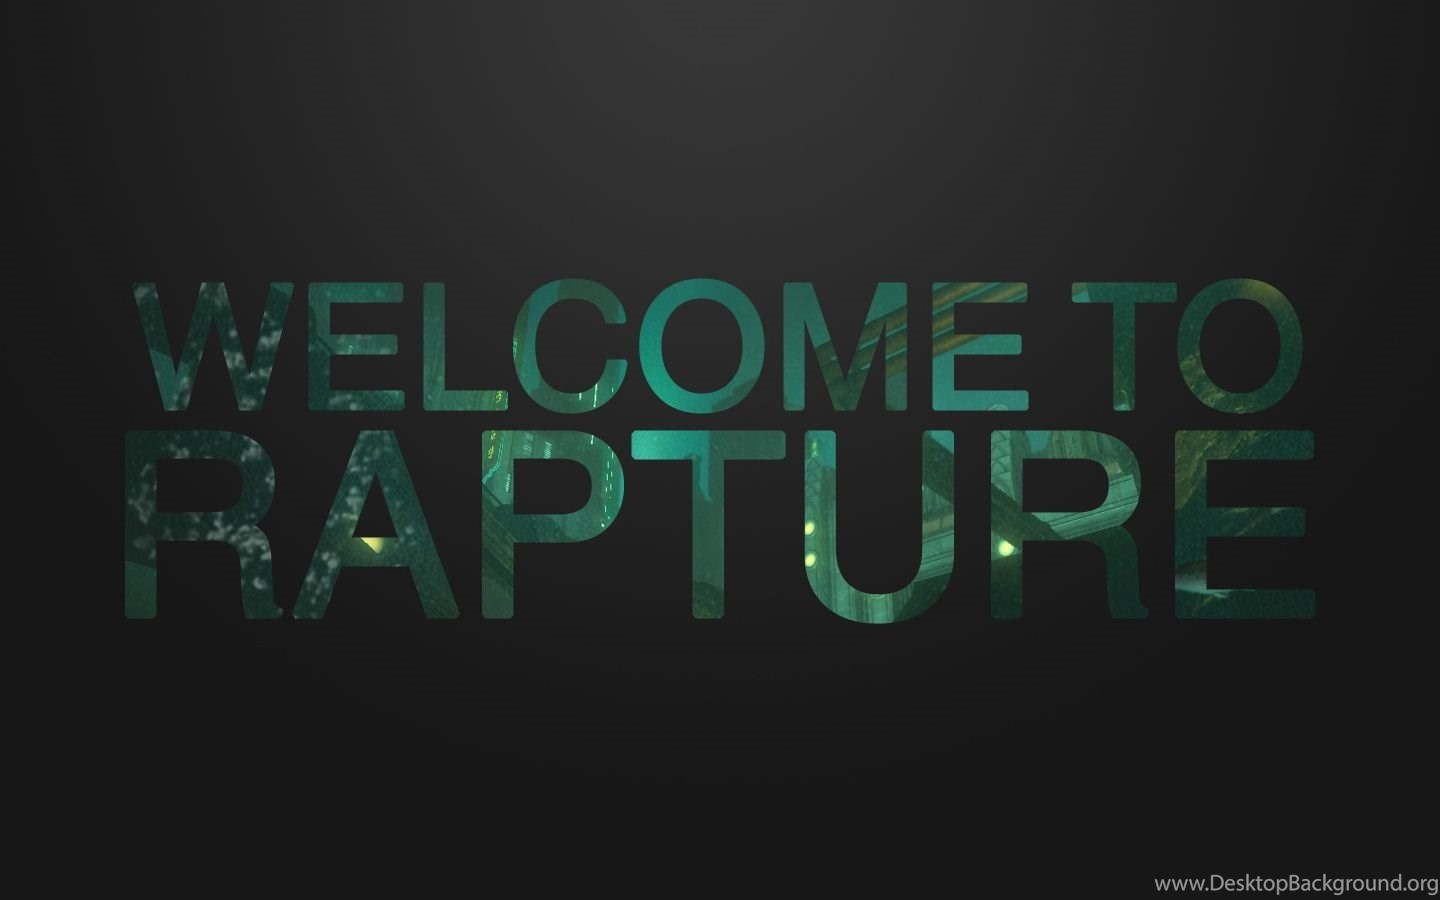 Be looked. Bioshock Rapture. Welcome to Rapture. Rapture фон. Rapture Wallpaper.